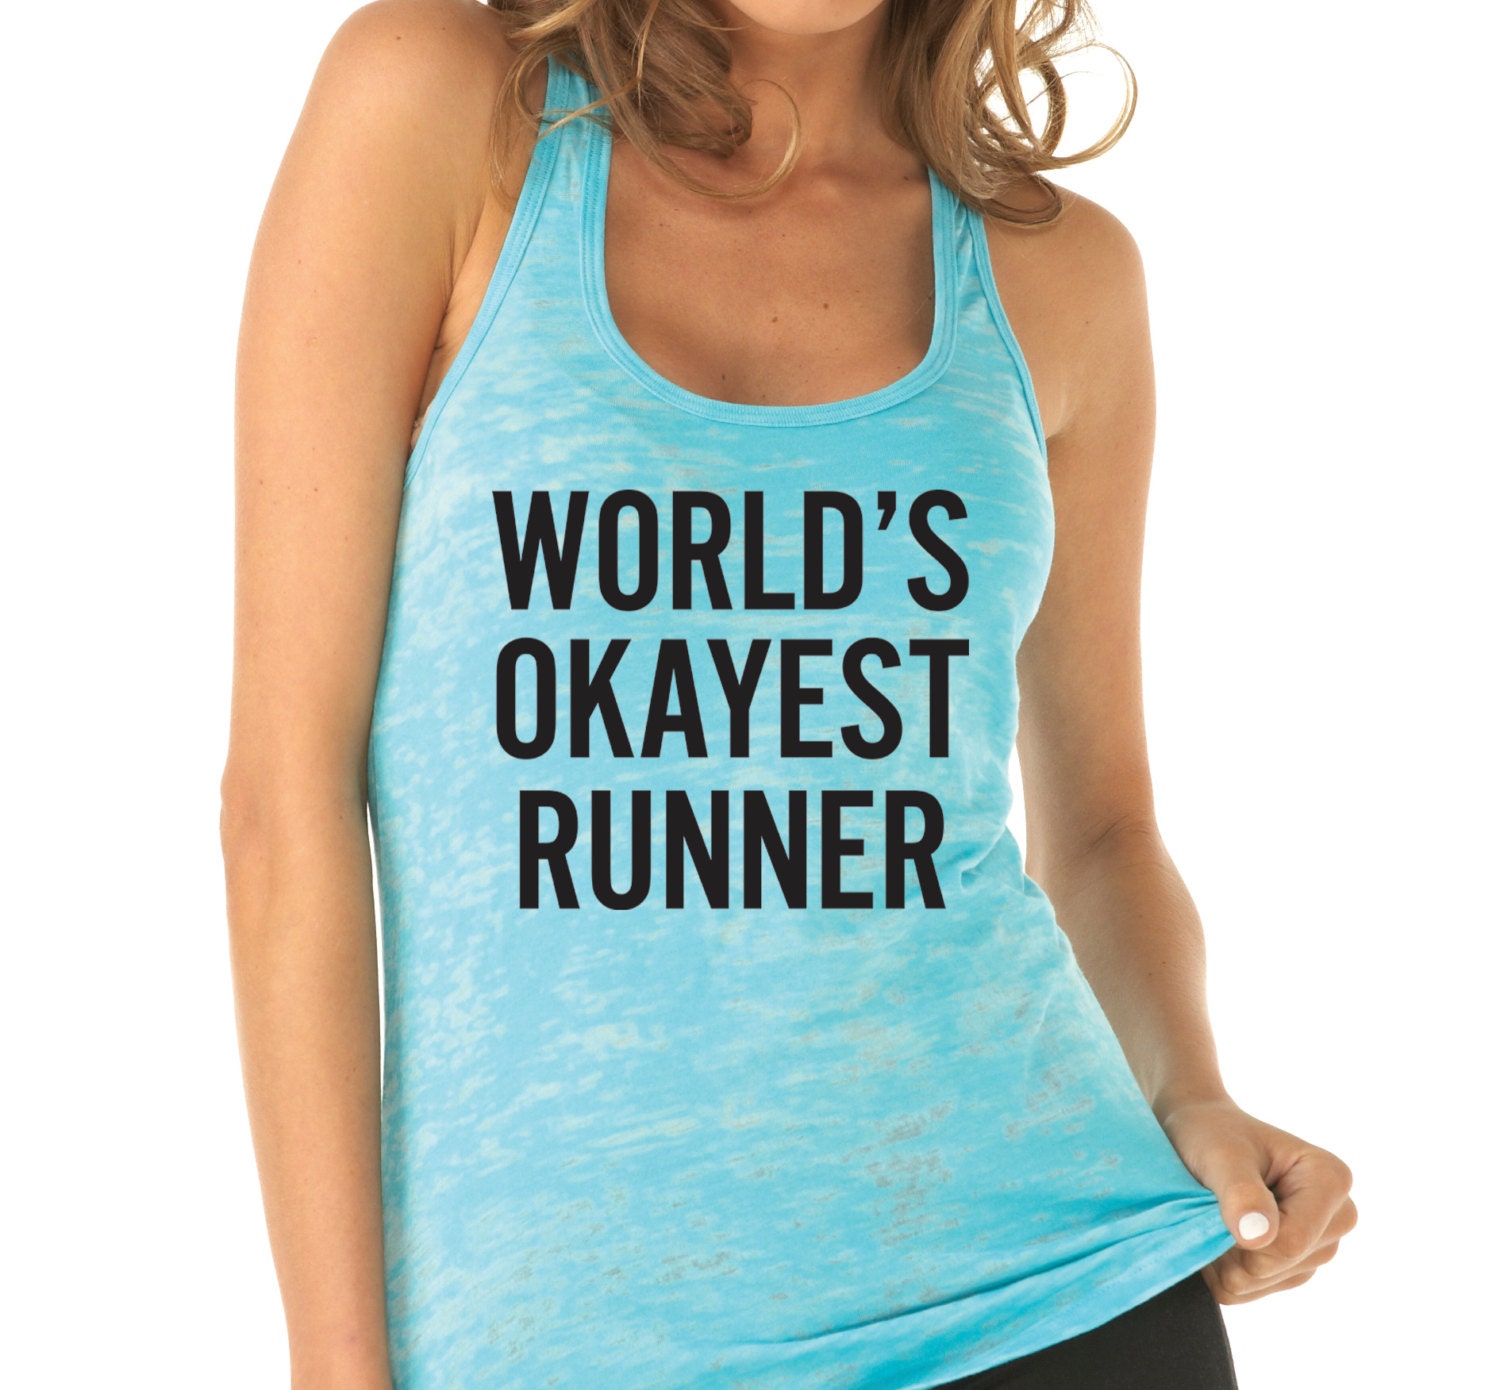 Worlds okayest runner